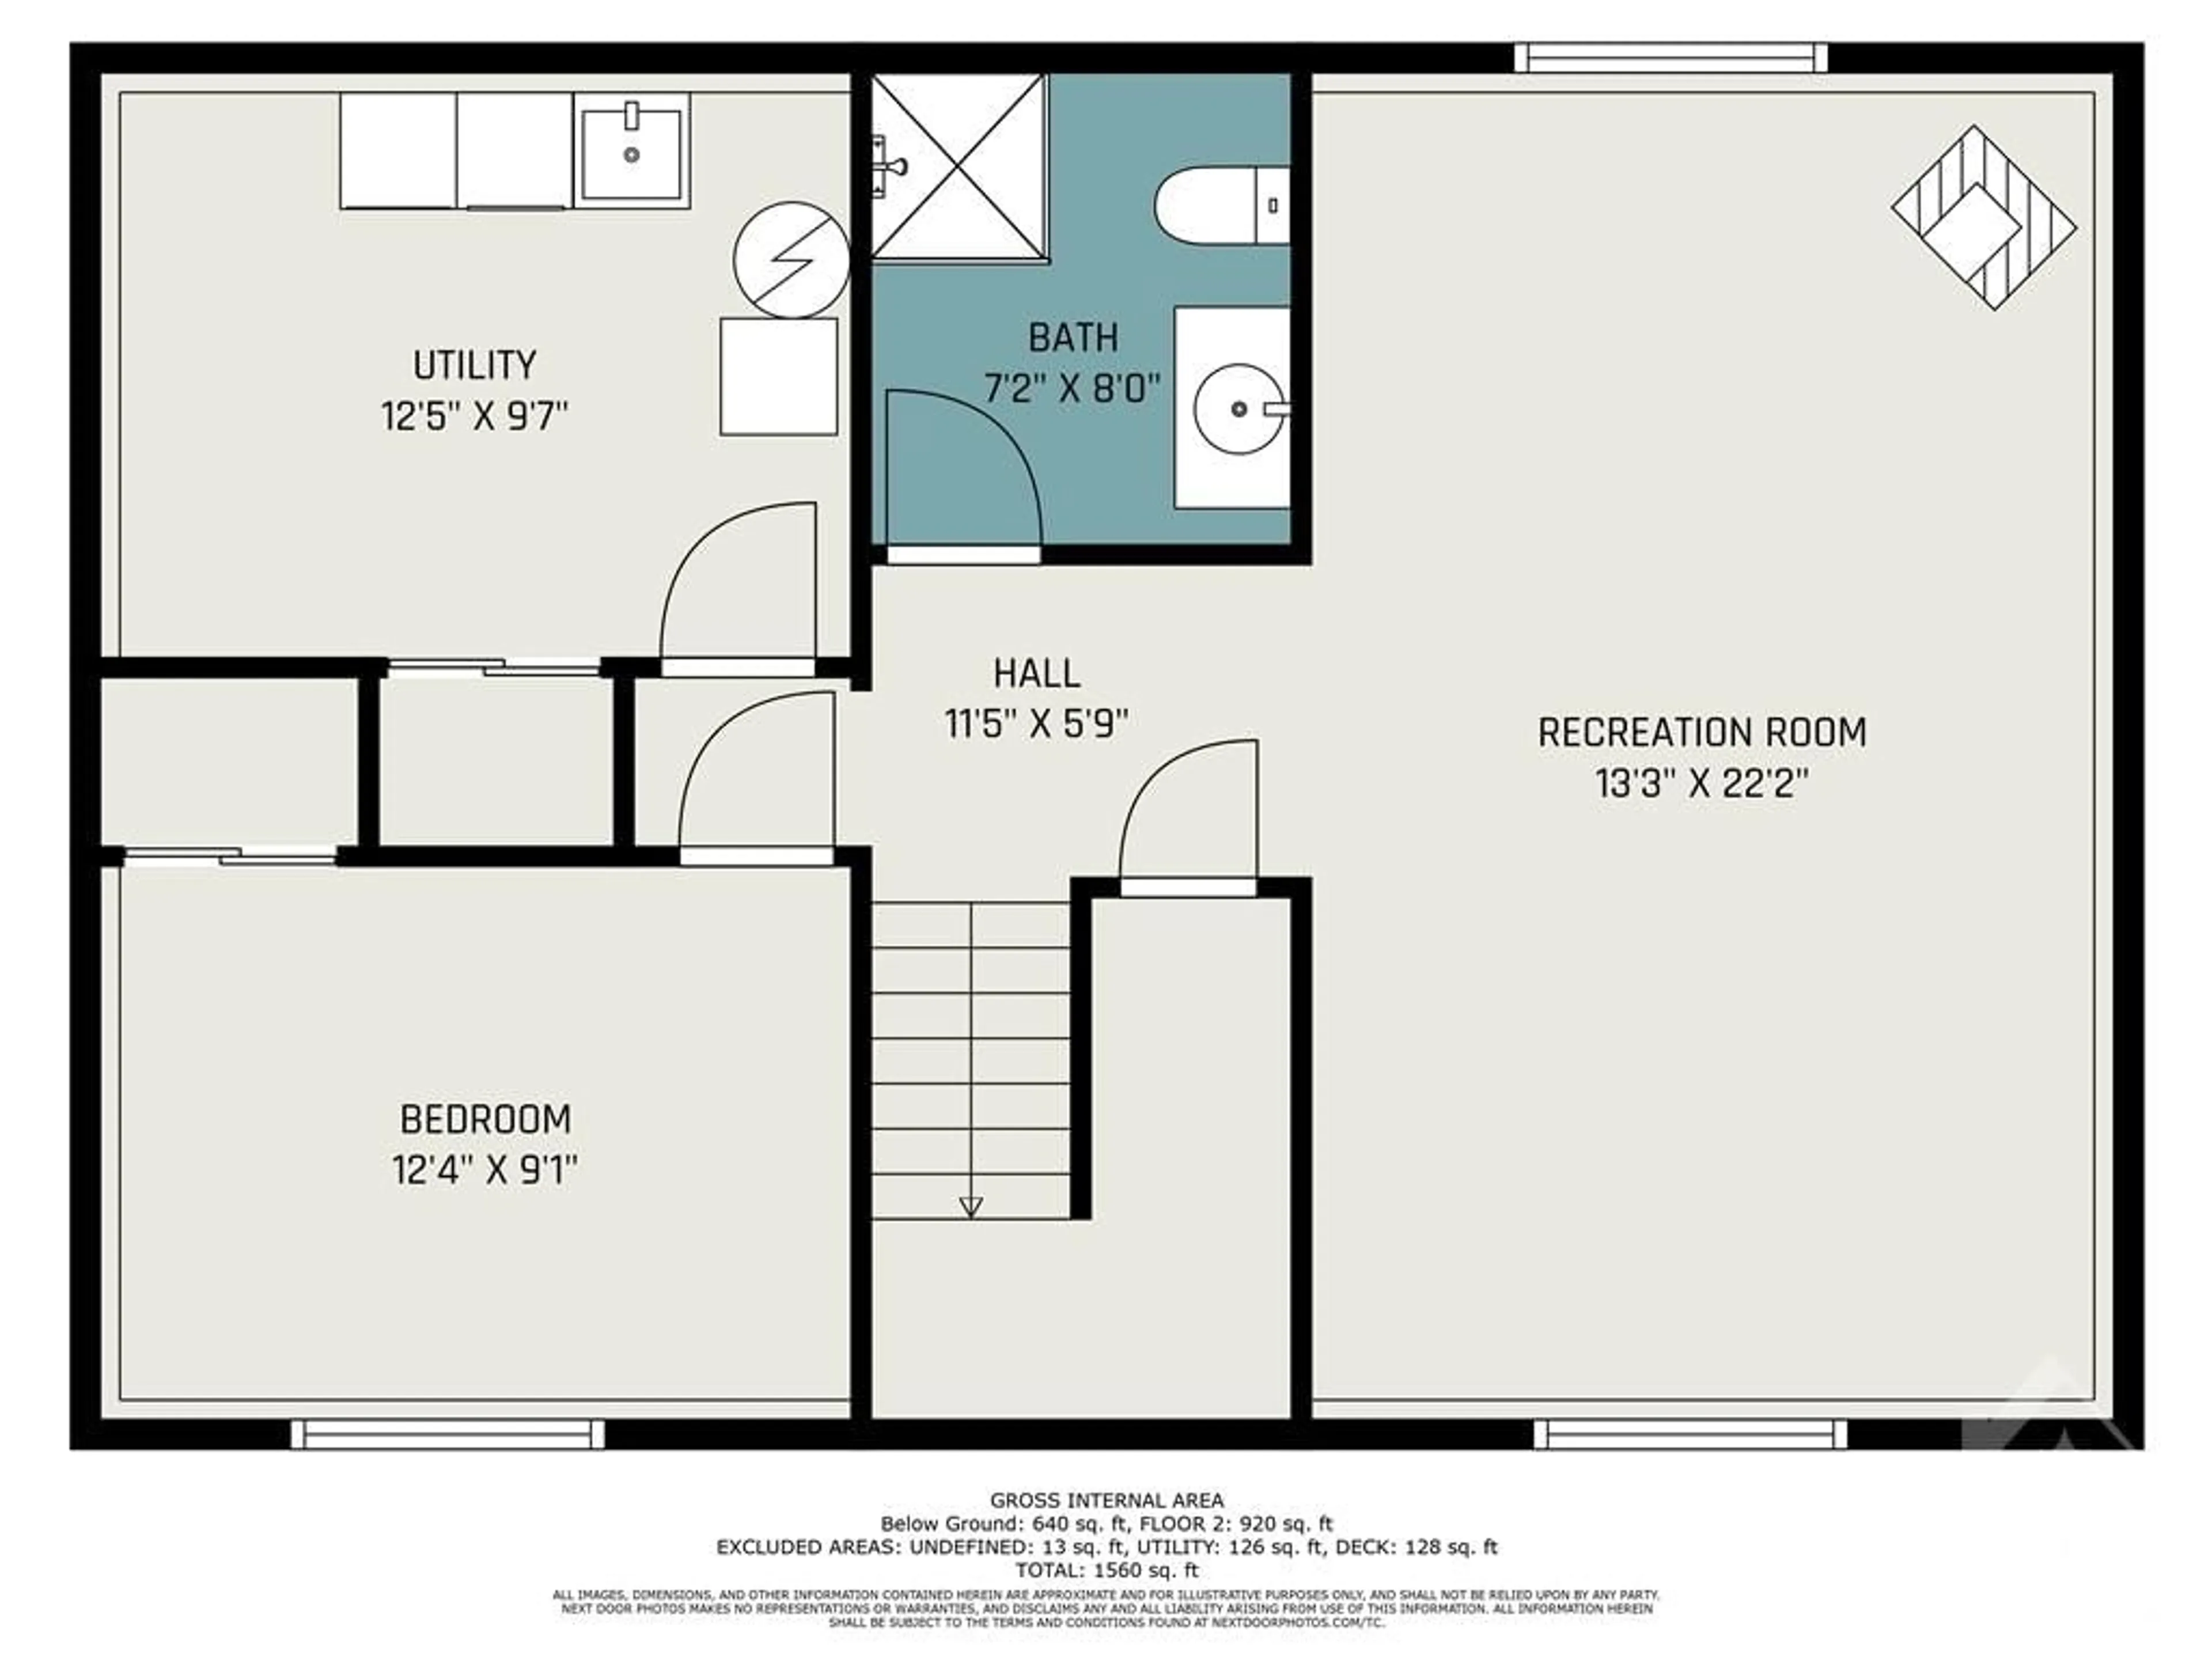 Floor plan for 339 LANARK St, Carleton Place Ontario K7C 3C4